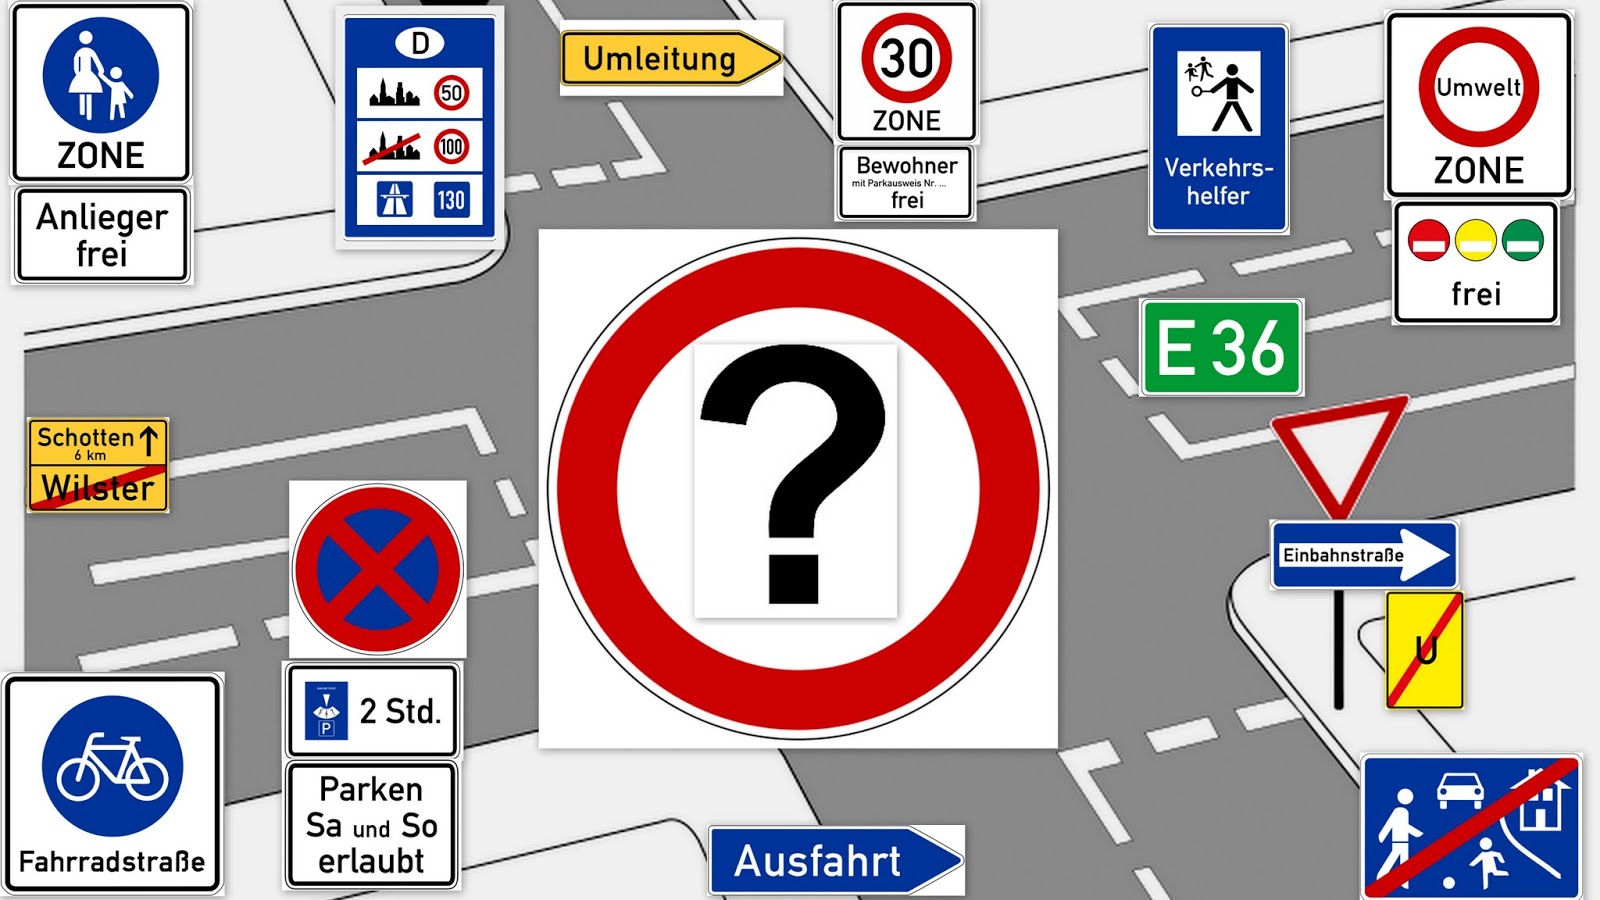 Европейские правила дорожного движения, с которыми следует ознакомиться перед поездкой за границу